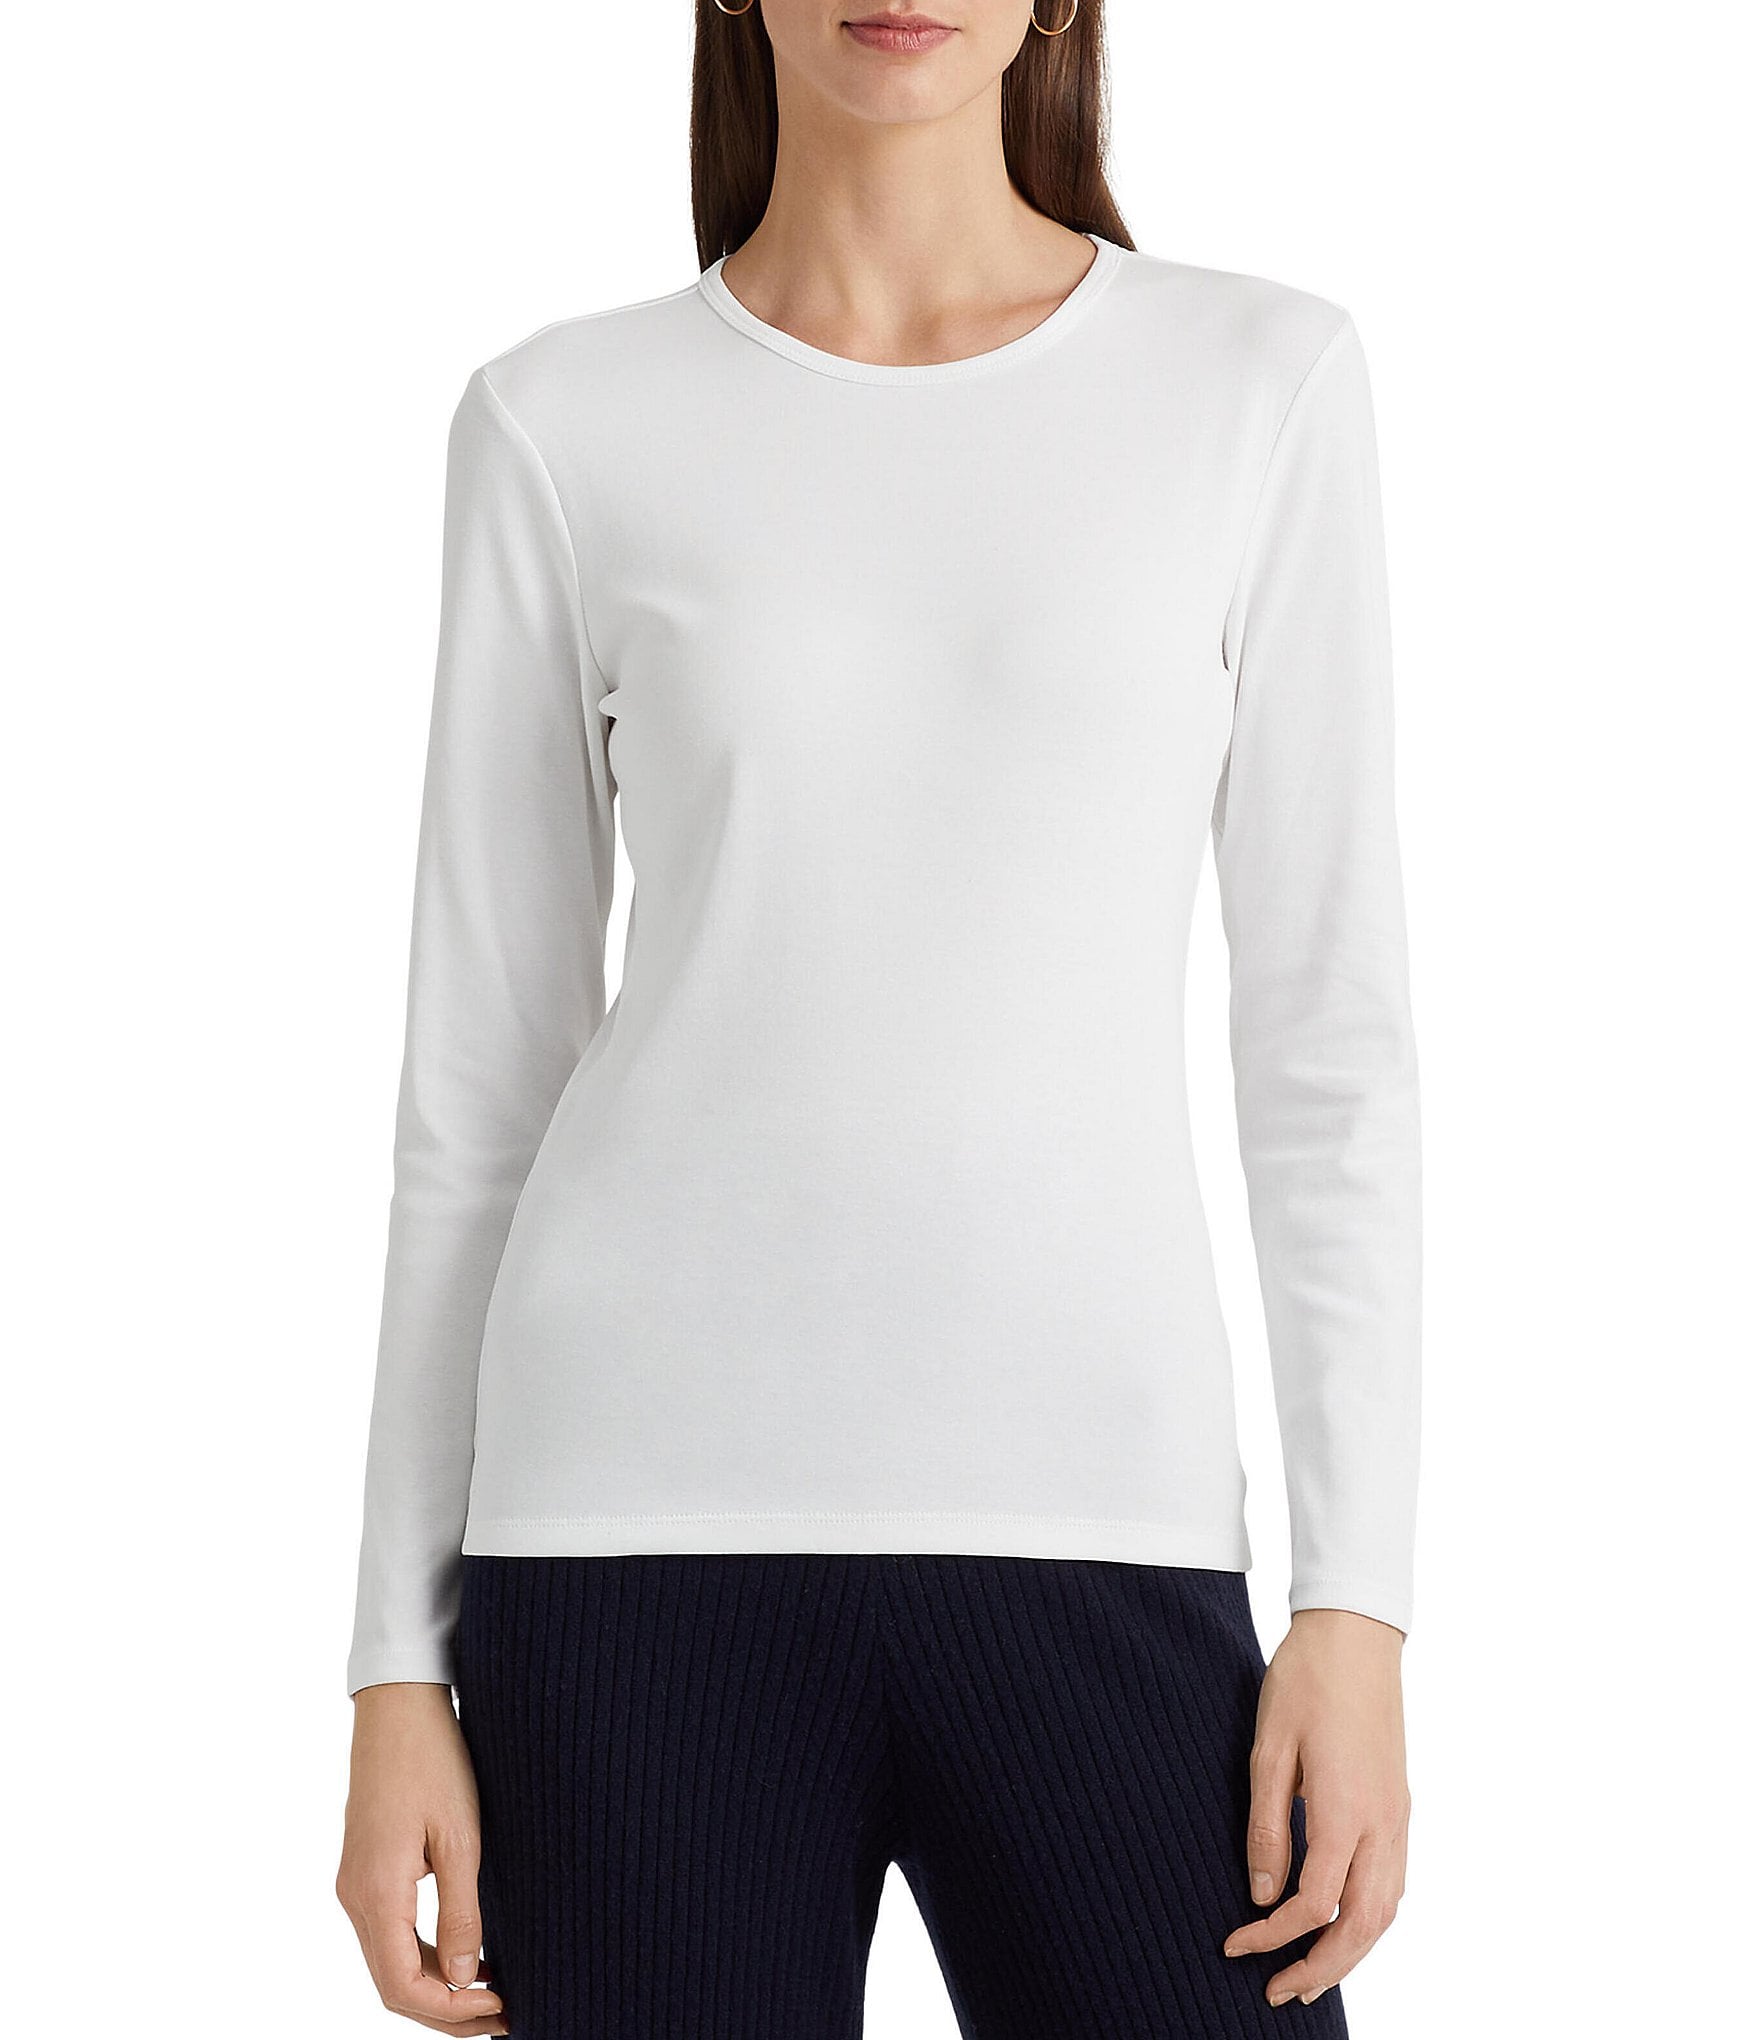 white tee: Women's Clothing | Dillard's